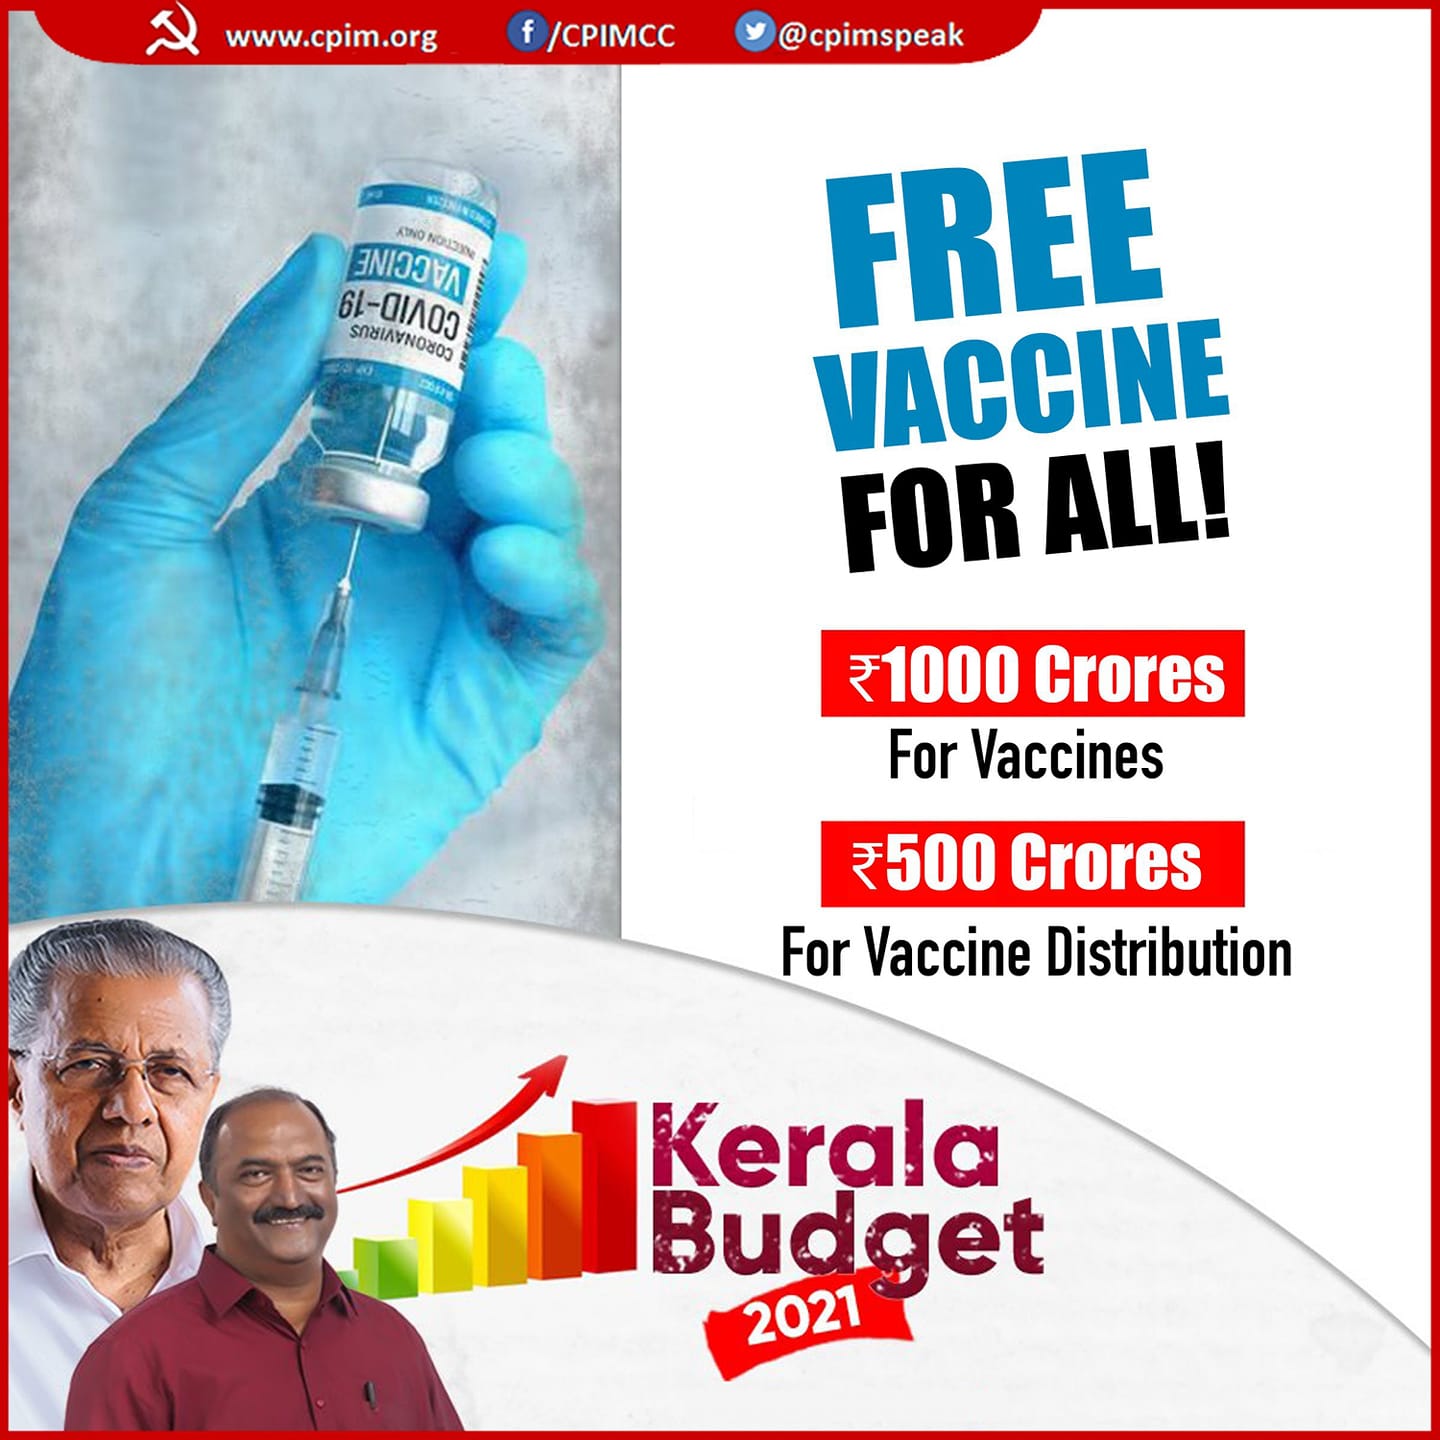 Le Kerala monte au créneau pour arracher une vaccination gratuite dans toute l'Inde